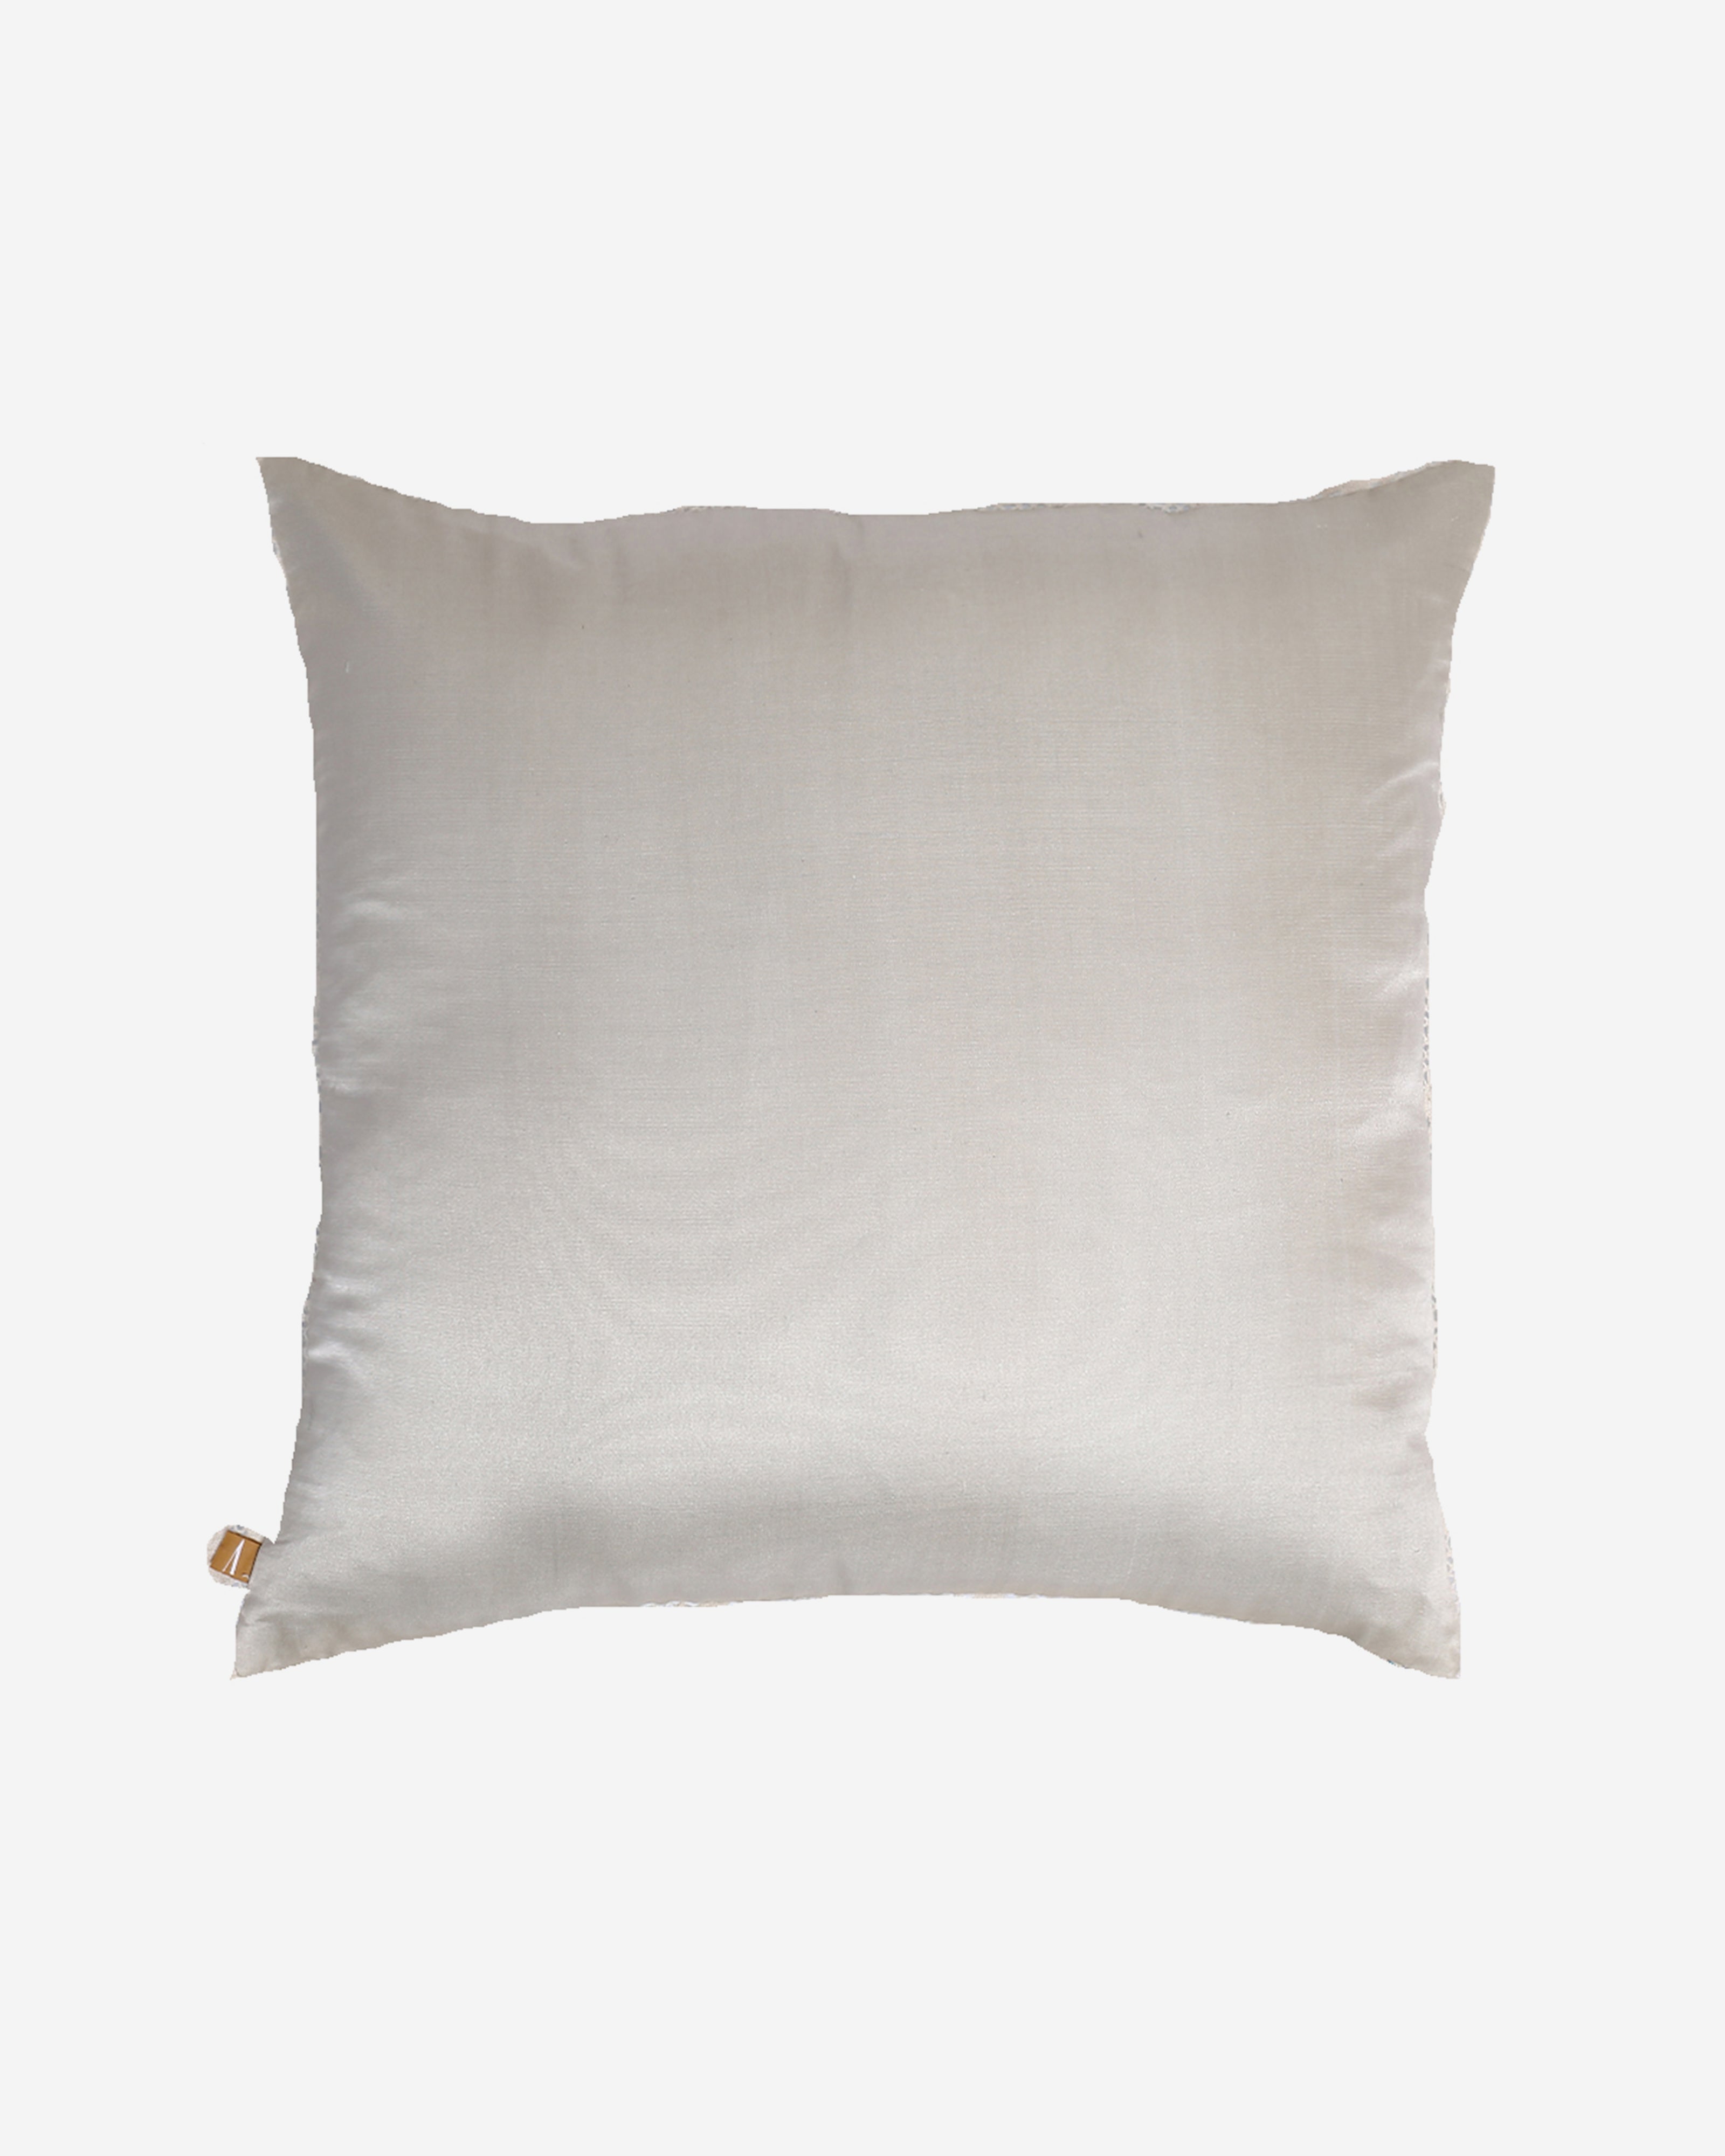 Aeluin Warp Ikat Silk Cotton Cushion Cover